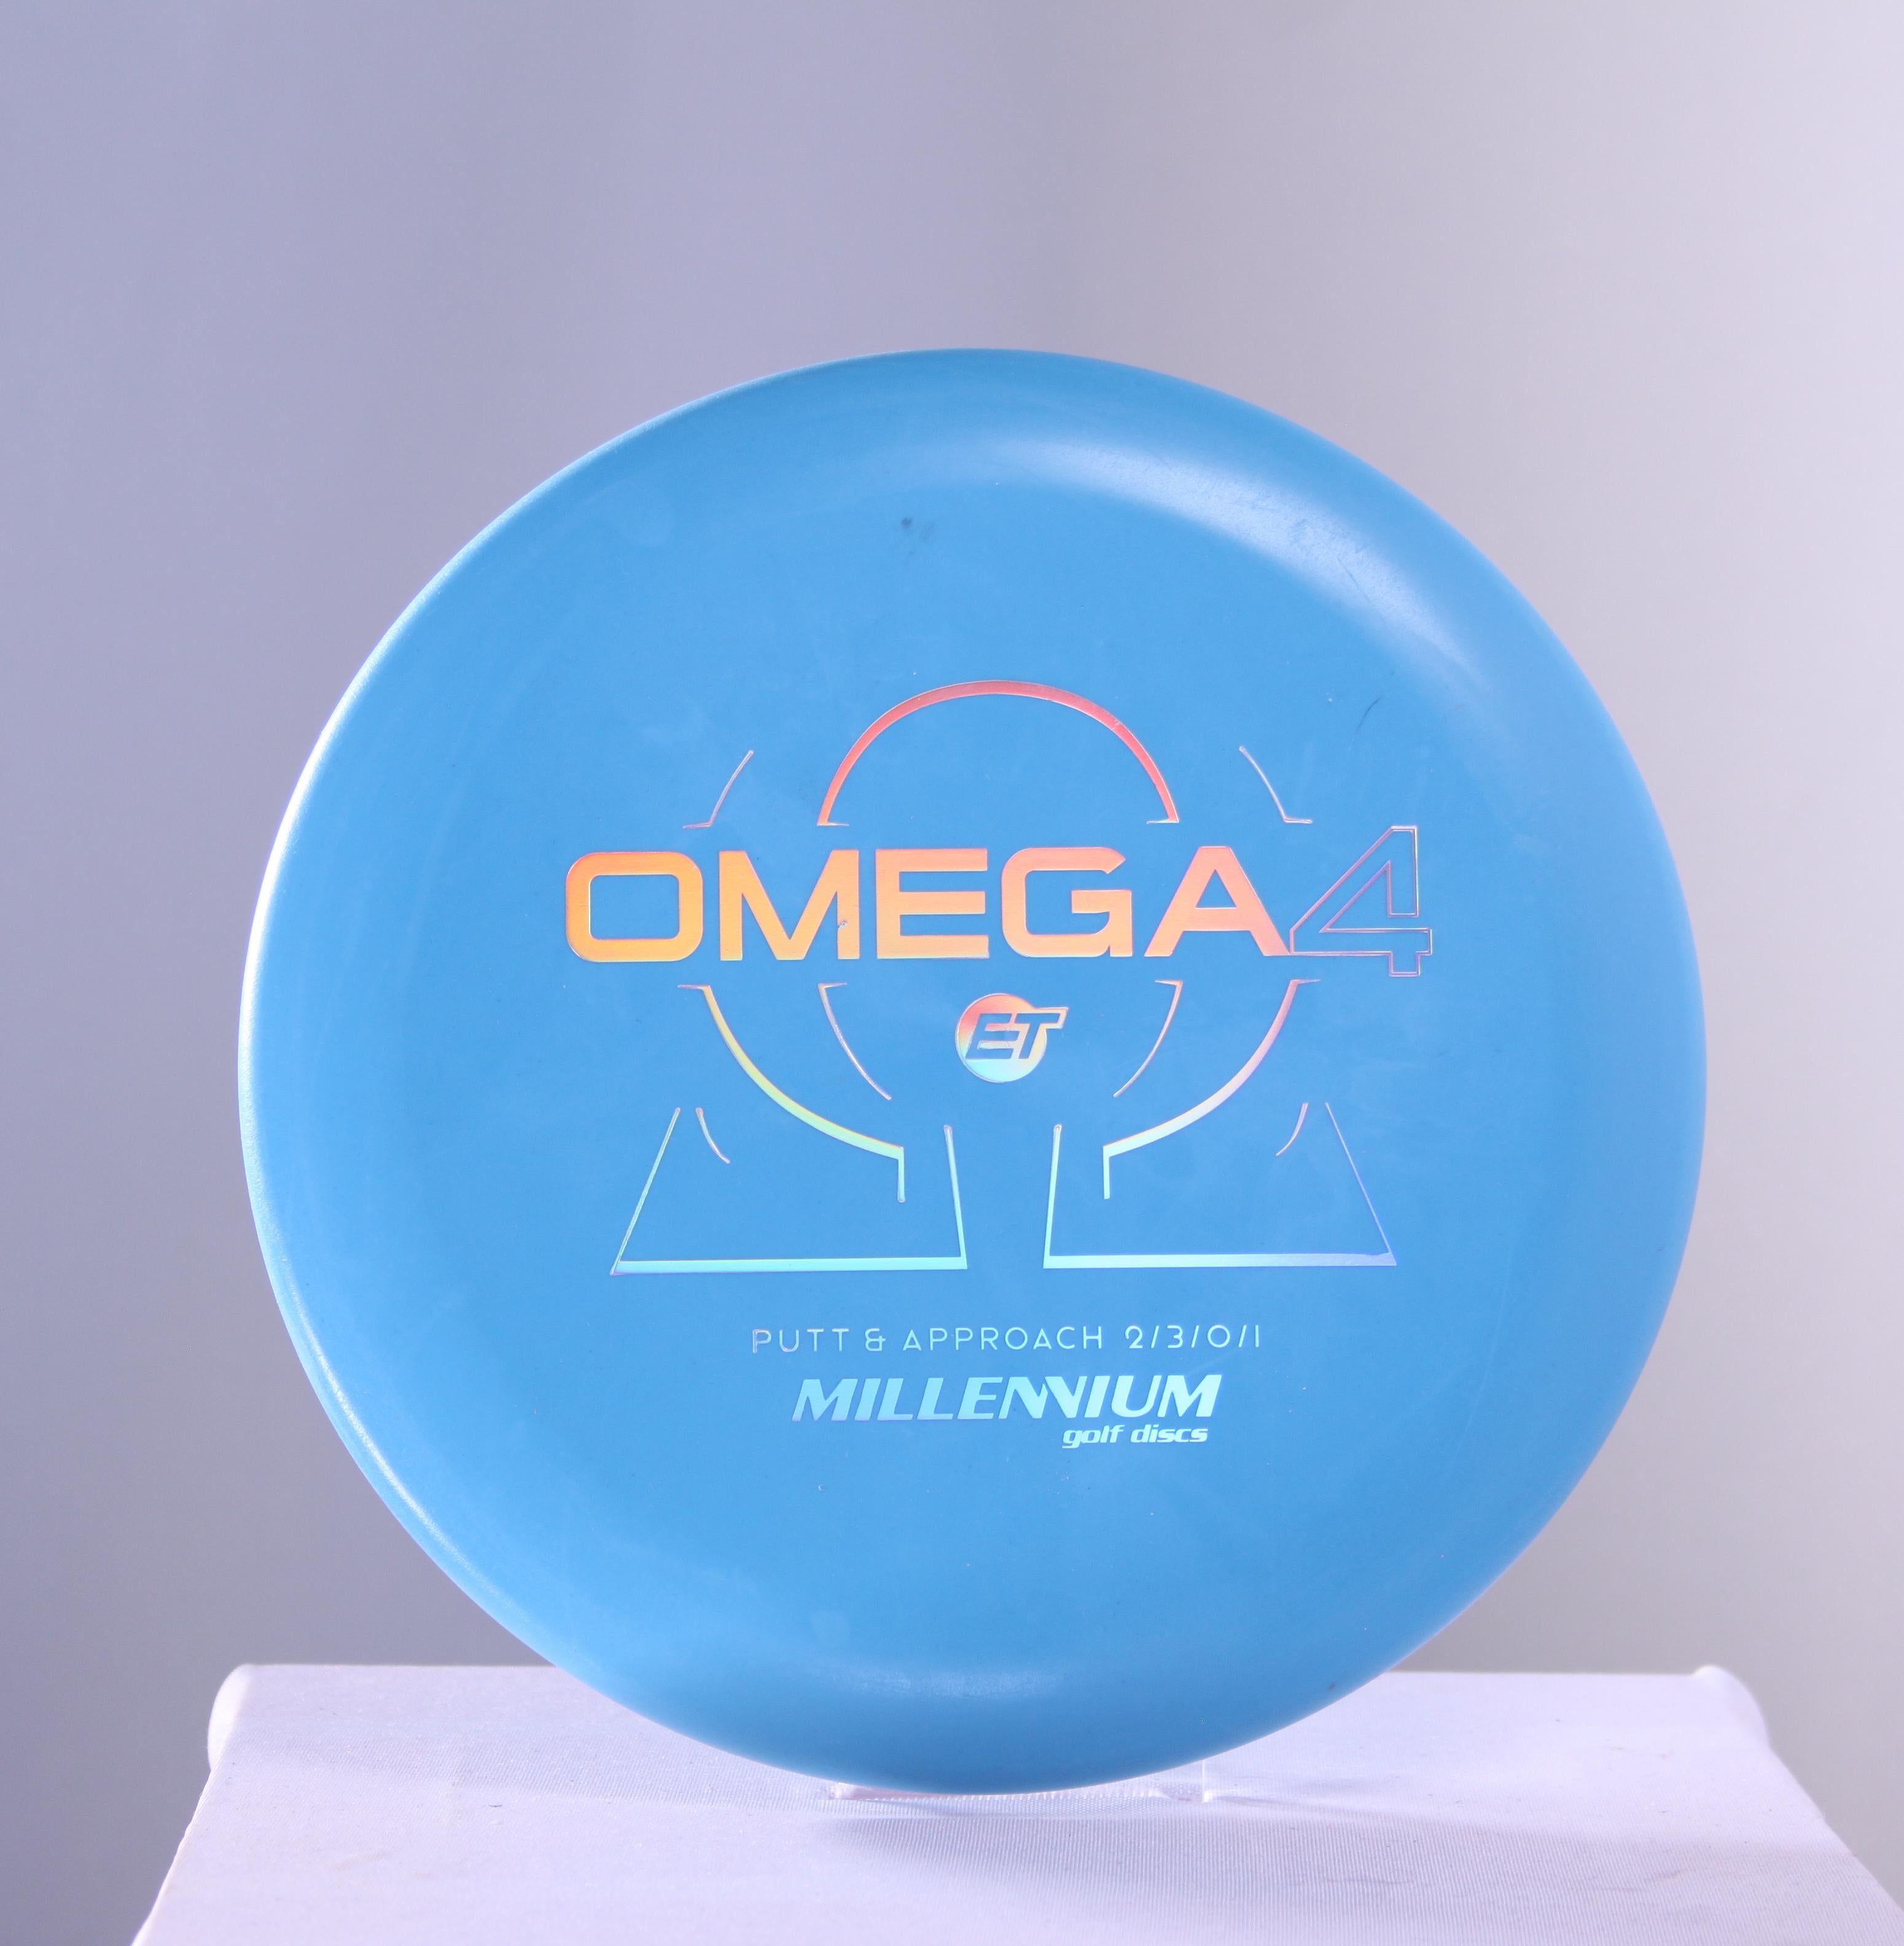 ET Omega4